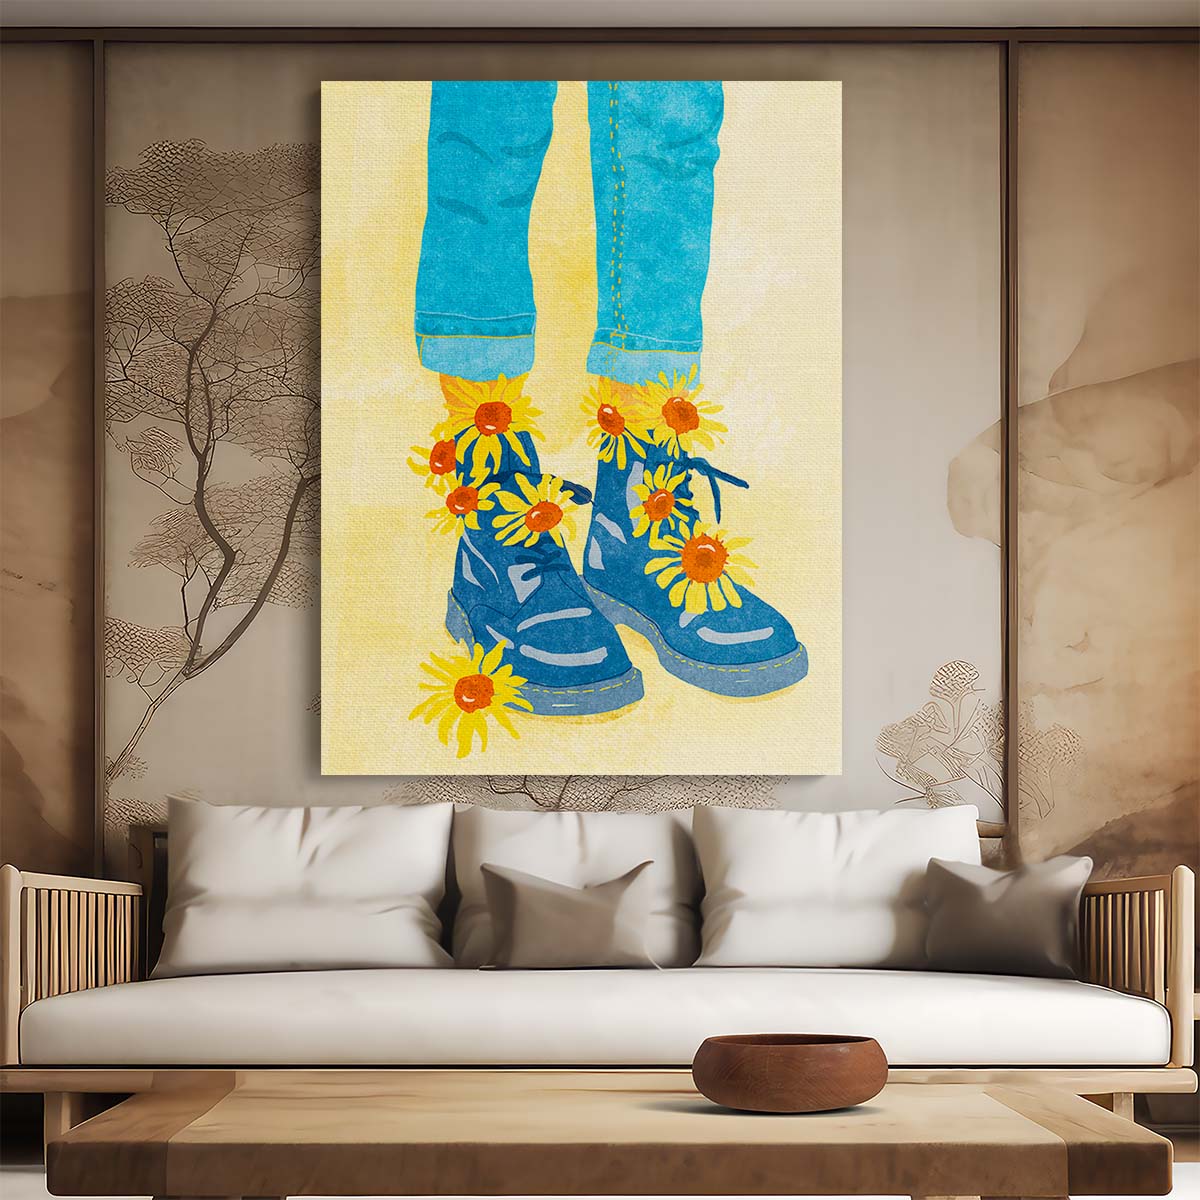 Sunflower Walk Illustration Summer Botanical Feminist Art by Raissa Oltmanns by Luxuriance Designs, made in USA